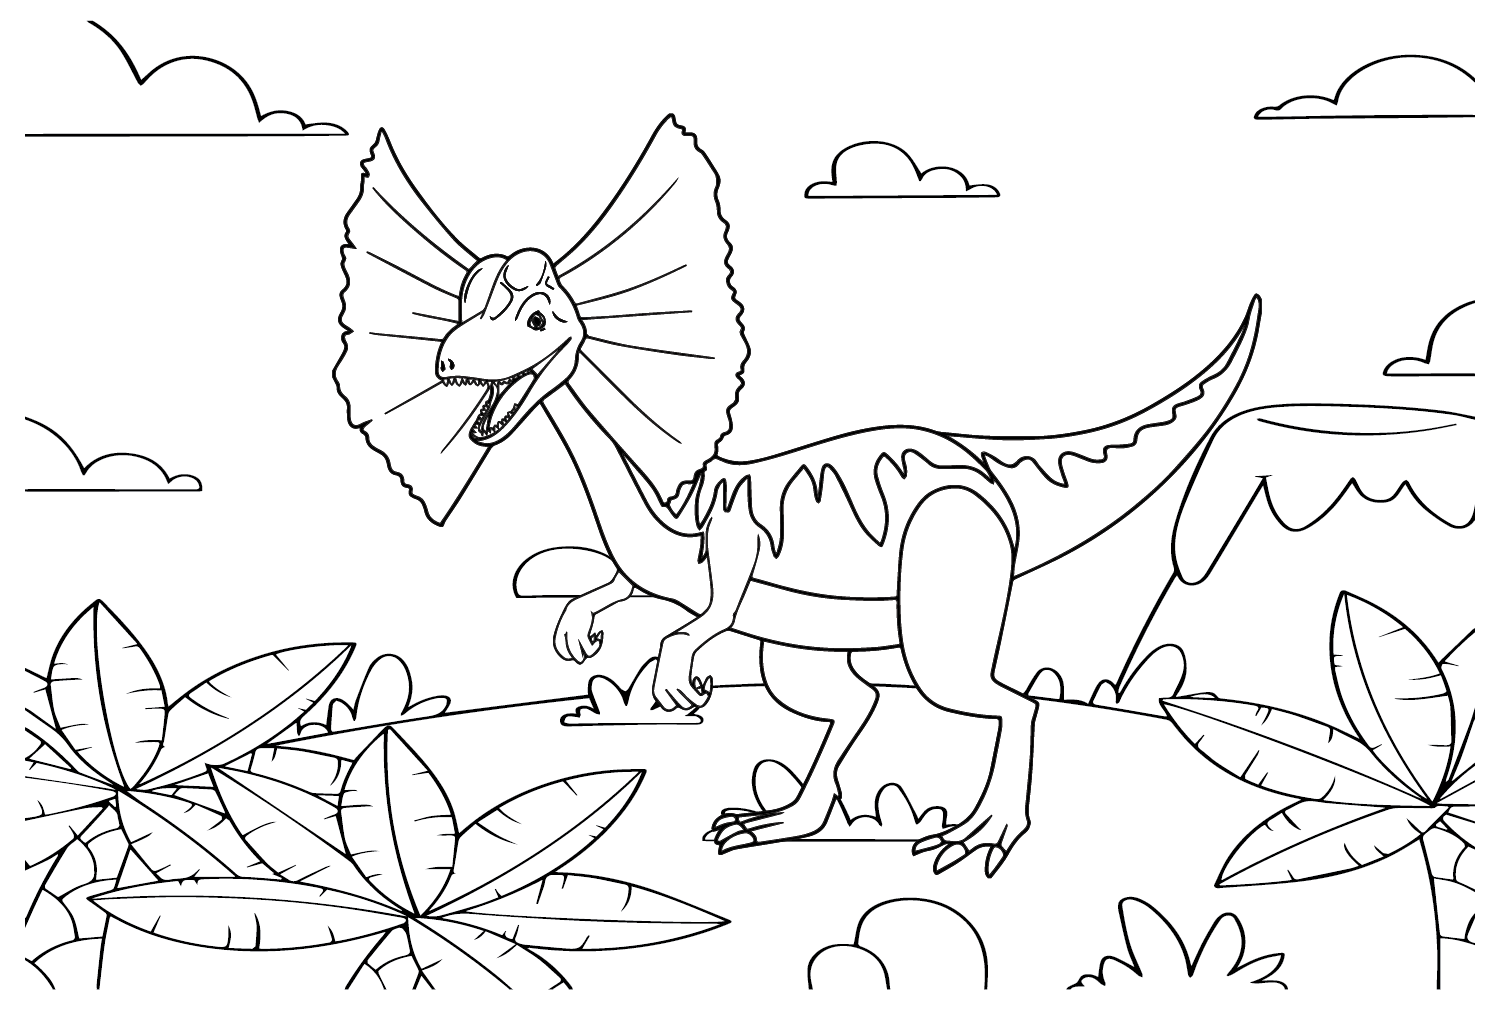 Desenhando a página para colorir do Dilophosaurus do Dilophosaurus